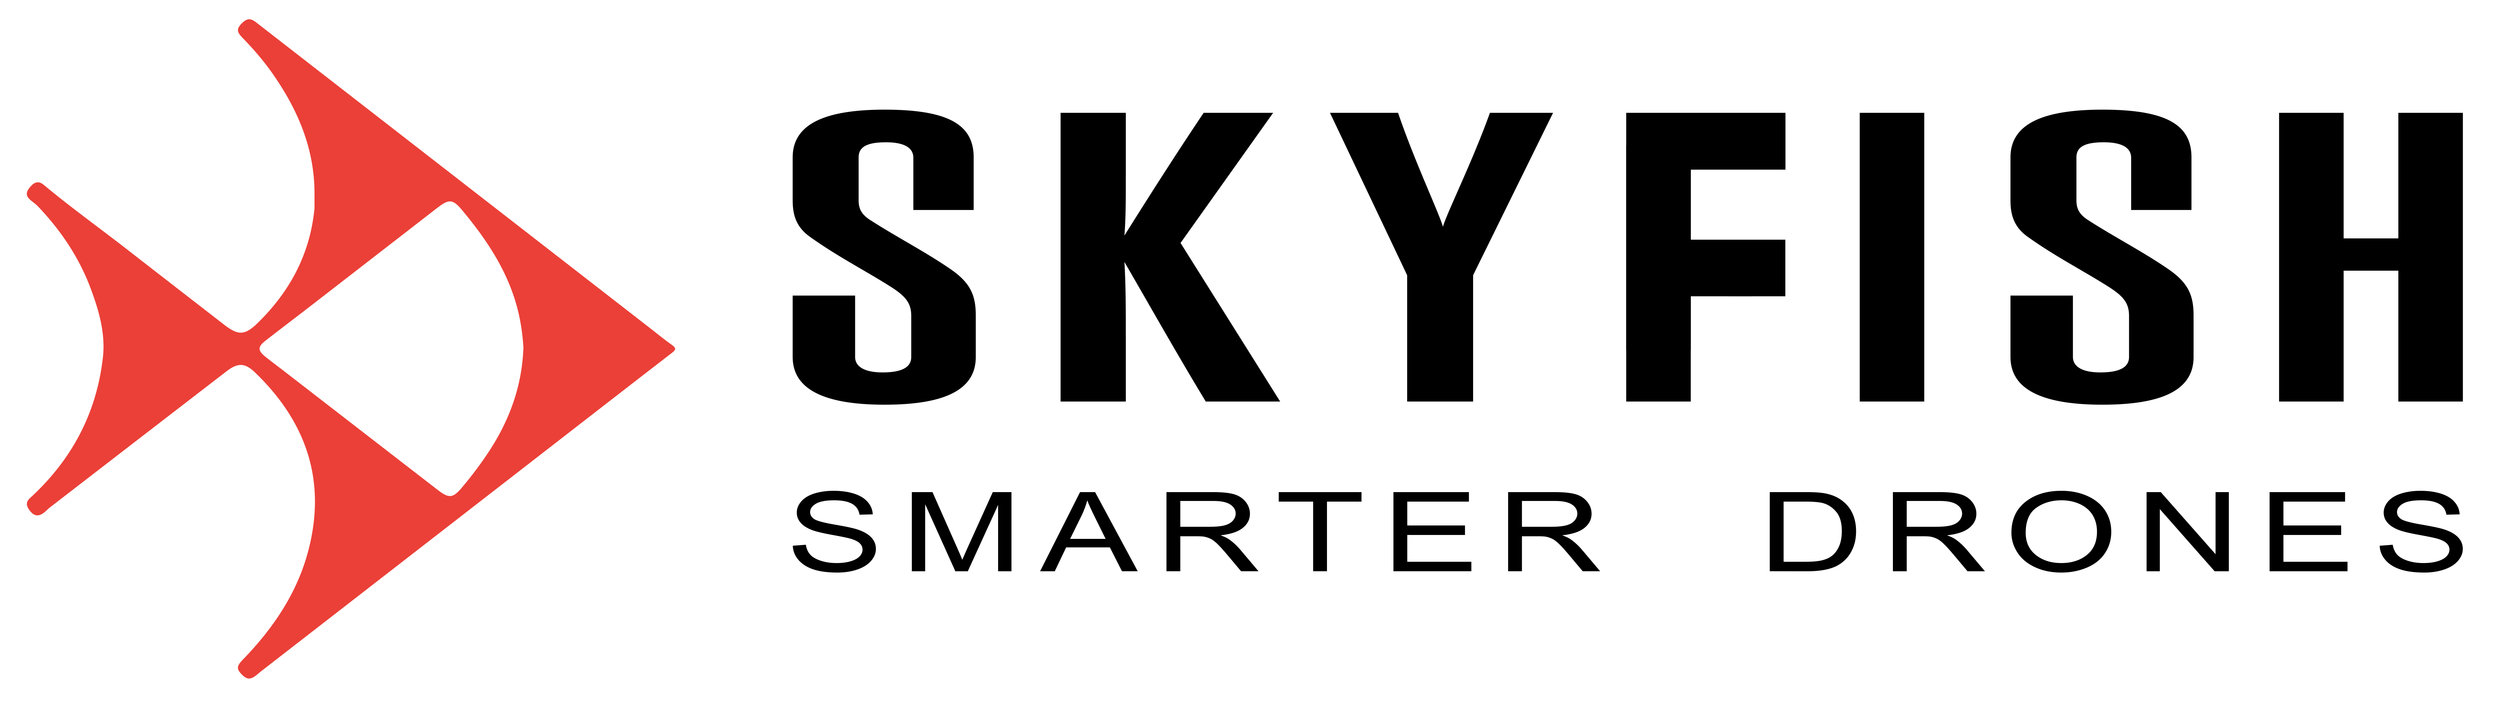 SkyFish logo_hires.jpg